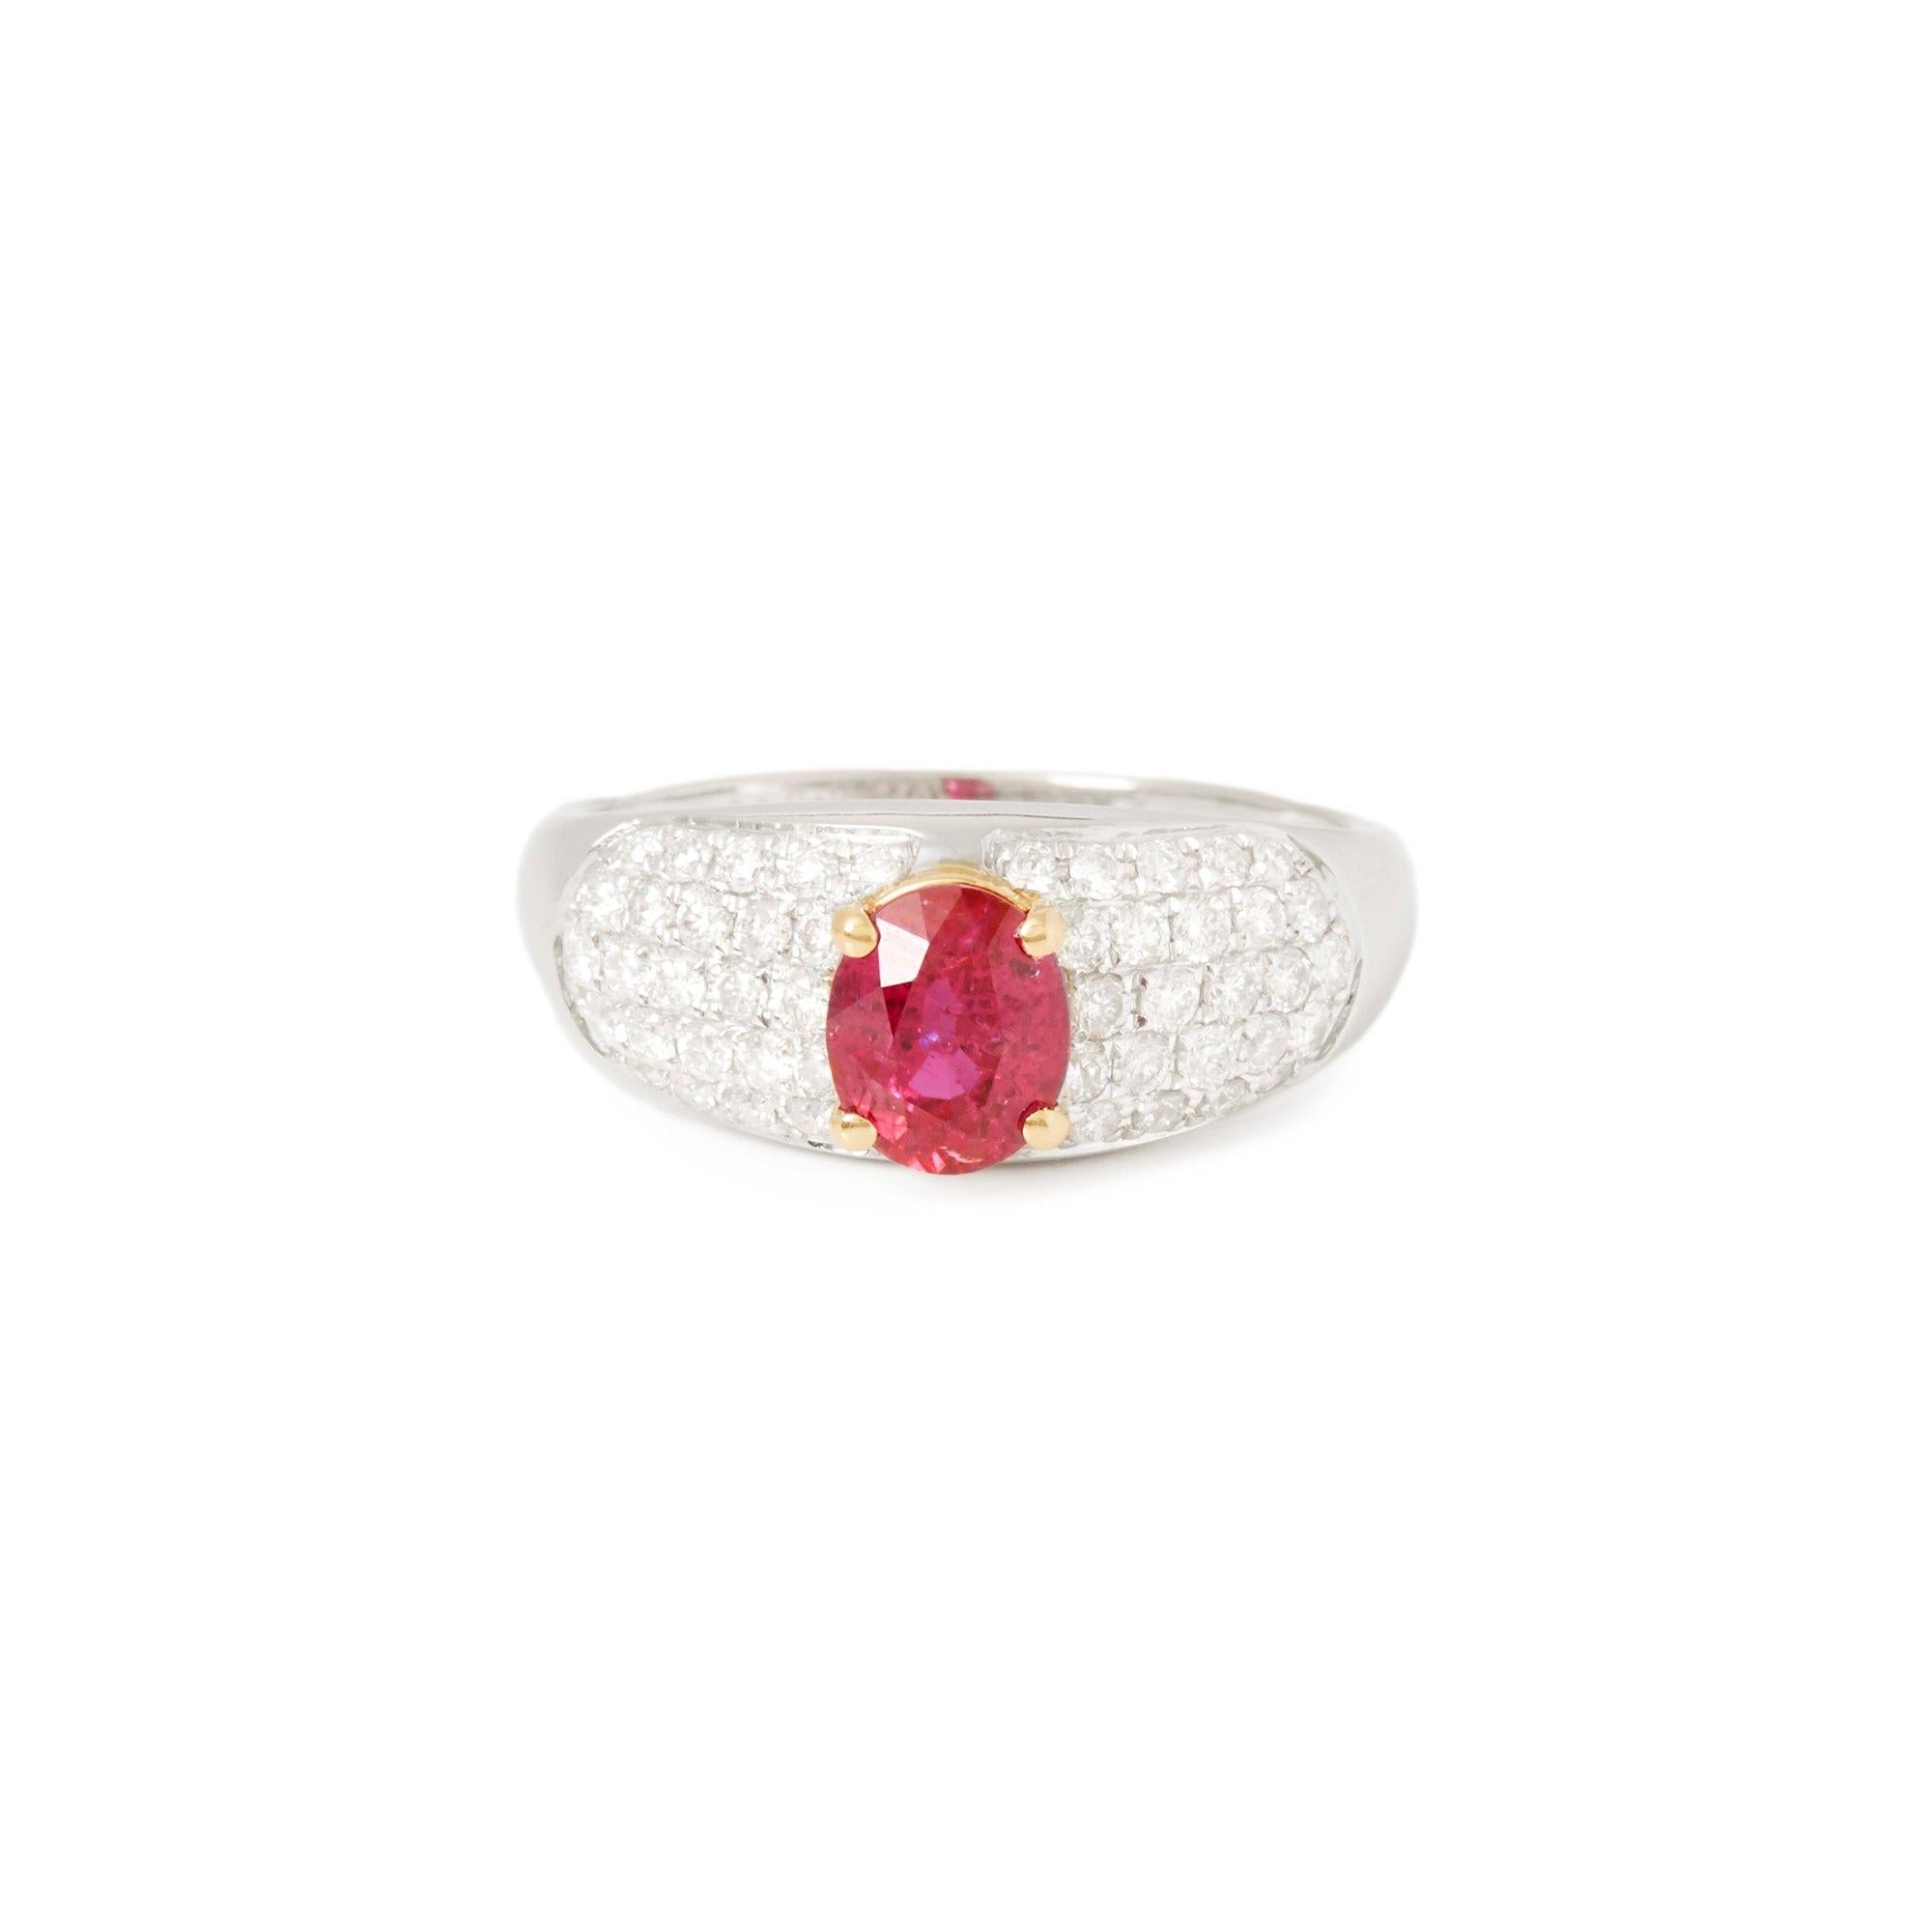 Dieser von David Jerome entworfene Ring stammt aus seiner Privatsammlung und enthält einen oval geschliffenen Rubin von insgesamt 1,21 Karat, der in Mosambik gewonnen wurde. Mit runden Diamanten im Brillantschliff von insgesamt 0,63 ct. in einer